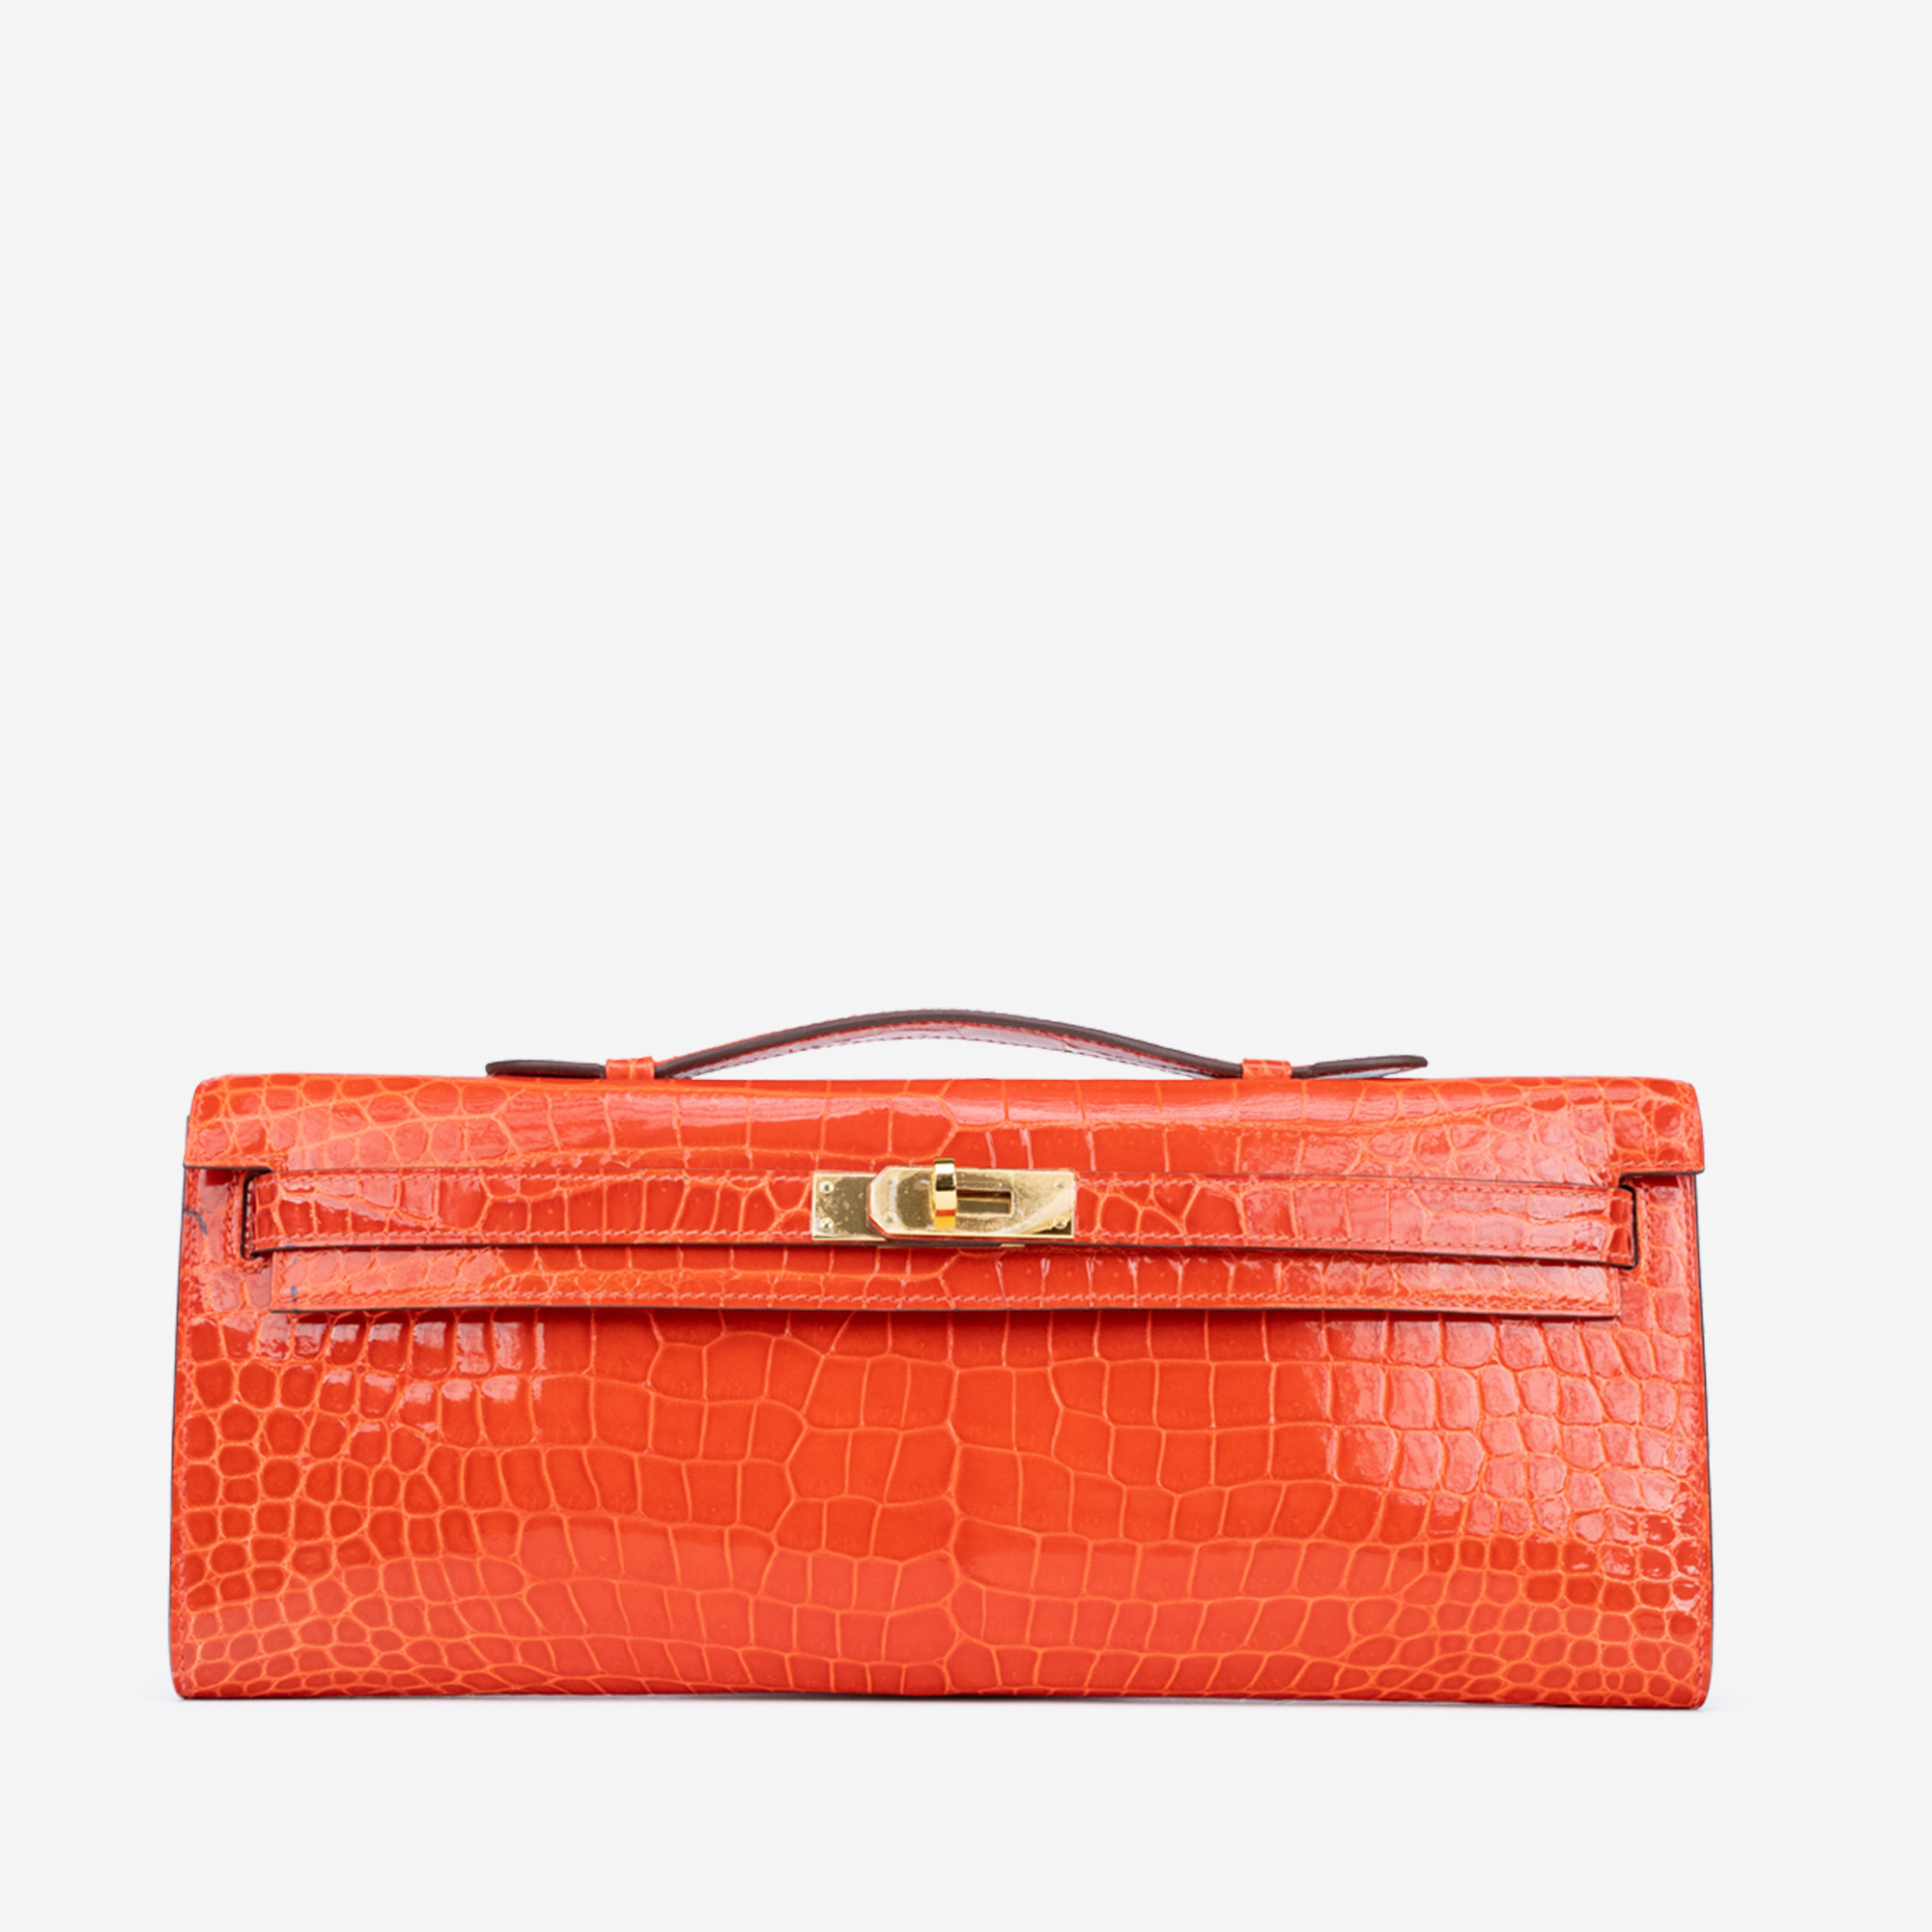 Sac Hermès d'occasion Kelly Cut Clutch Porosus Crocodile Orange Poppy Orange | Vendez votre sac de créateur sur Saclab.com